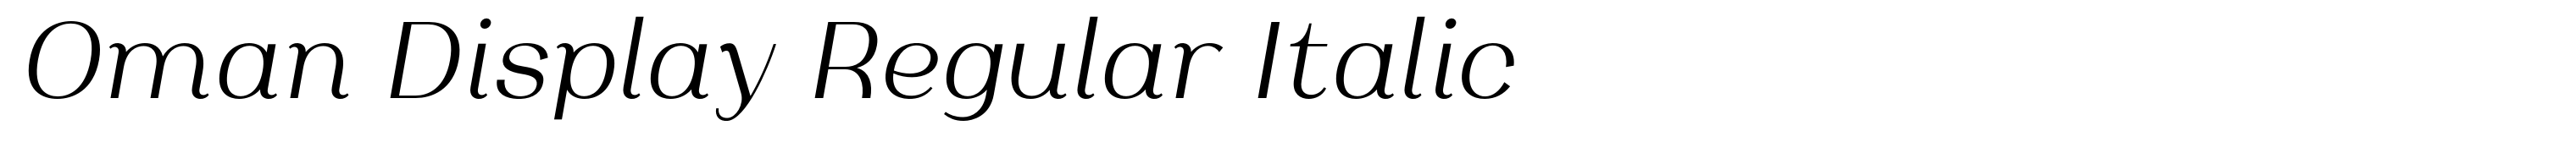 Oman Display Regular Italic